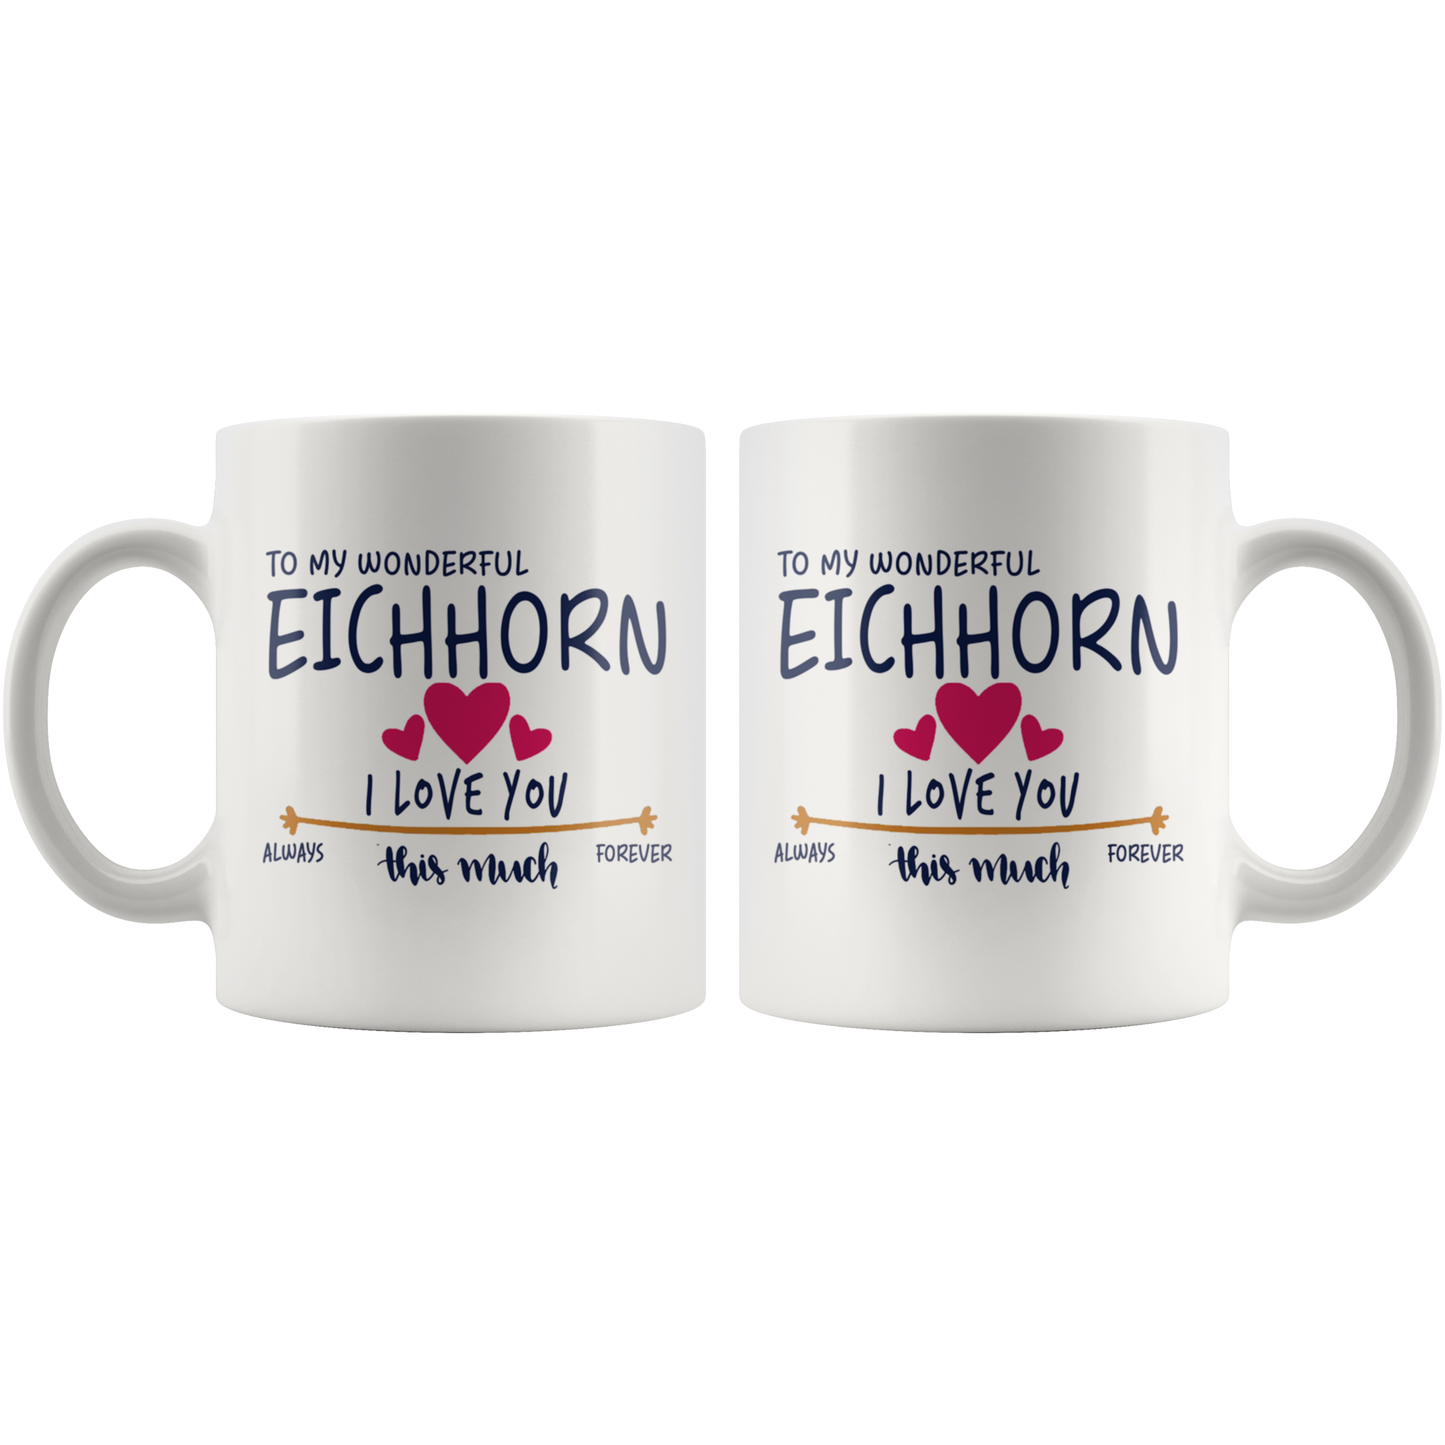 M-20380621-sp-17755 - Merry Christmas Mug Gift - To My Wonderful Eichhorn I Love Y